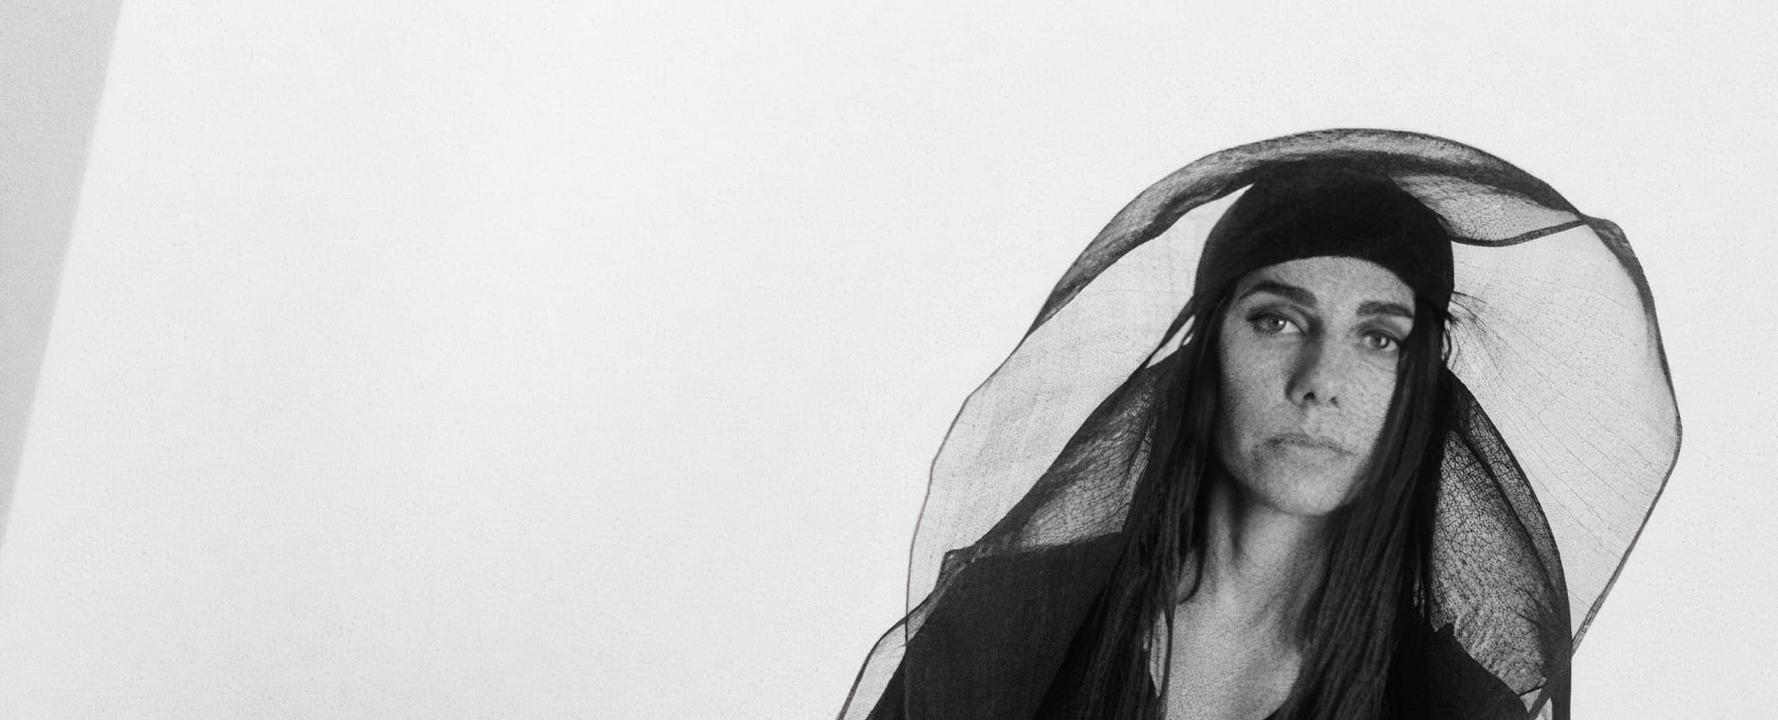 Fotografía promocional de PJ Harvey